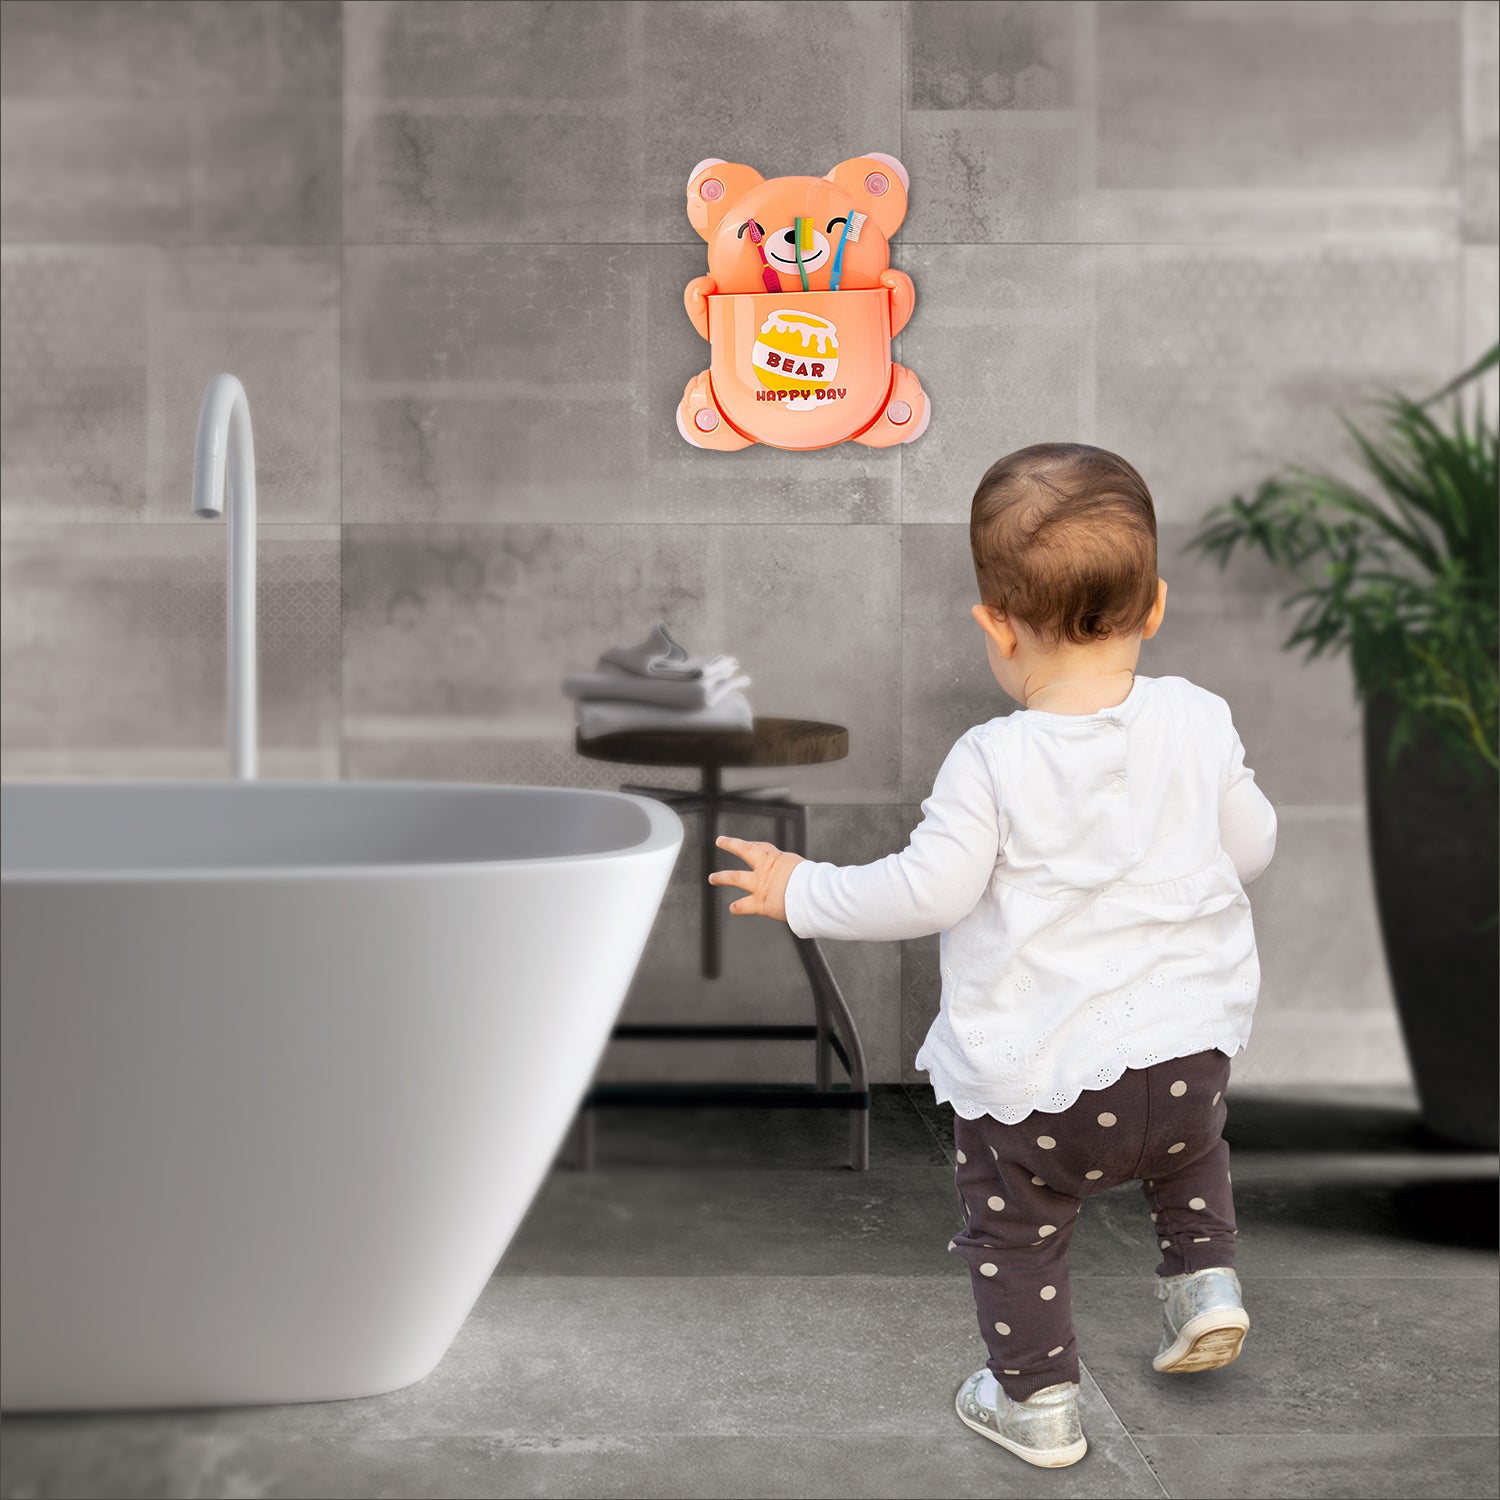 Blushing Bear Orange Toothbrush Holder - Baby Moo